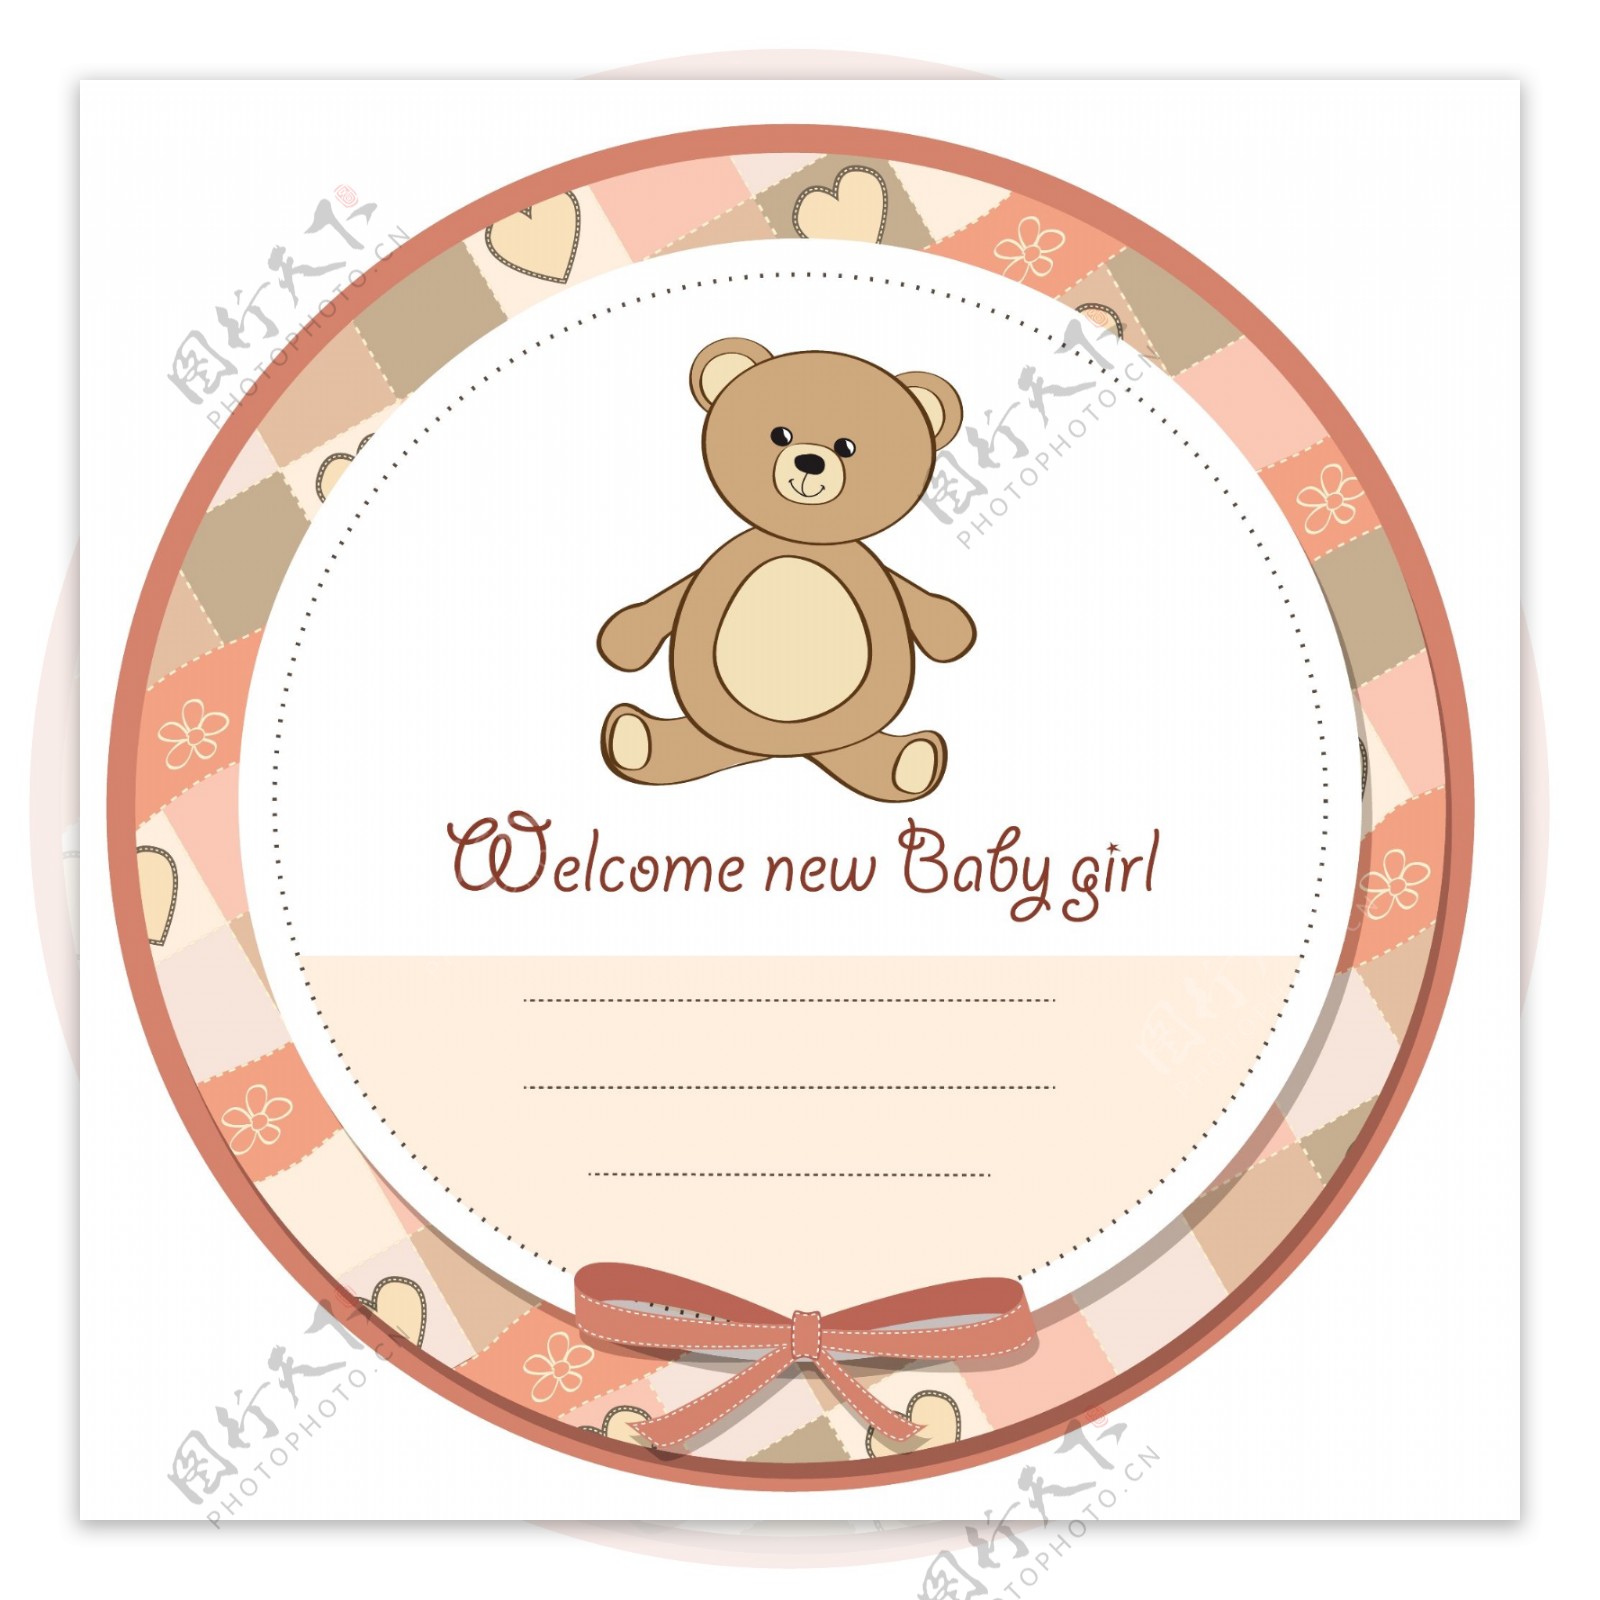 可爱的婴儿洗澡标签与泰迪熊